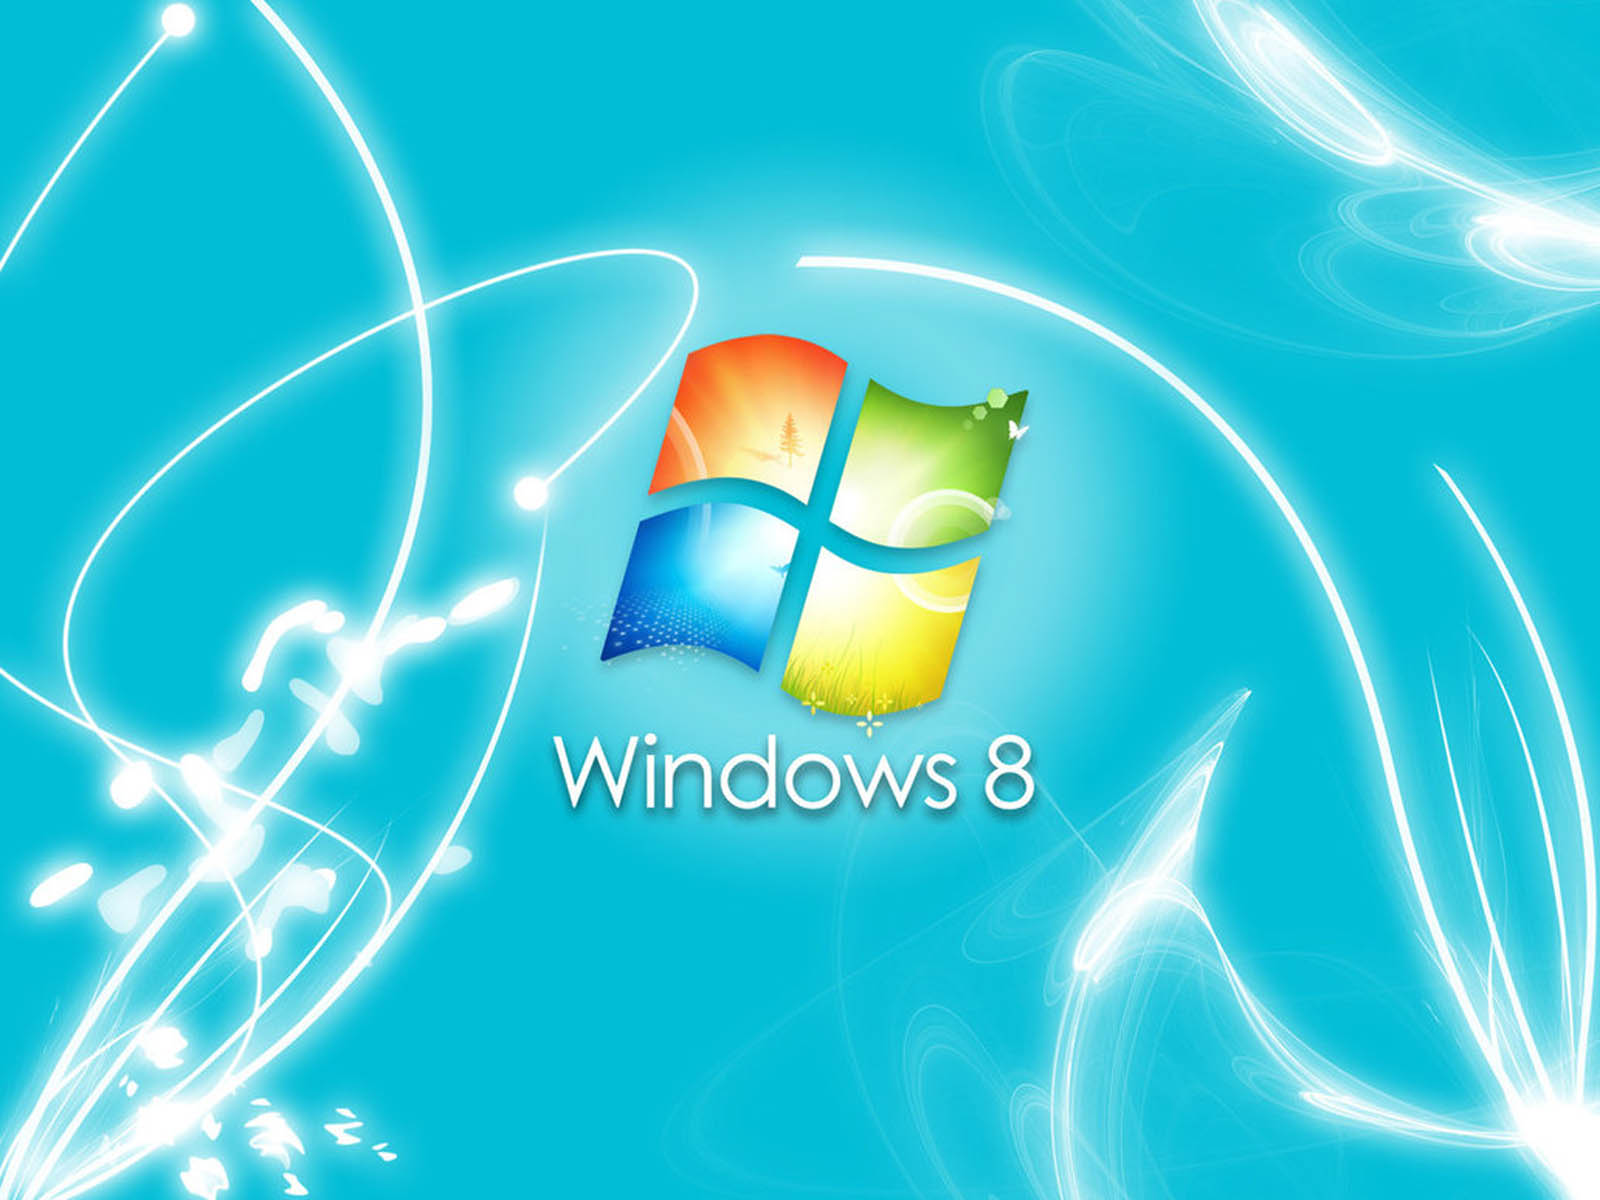 Tải hình nền Windows 8: Muốn thay đổi không gian làm việc trên Windows 8 của mình, bạn có thể bắt đầu bằng cách tải những hình nền đẹp để làm mới màn hình. Với hàng nghìn tùy chọn từ các thể loại khác nhau, bạn sẽ tìm thấy hình nền phù hợp với phong cách của mình.